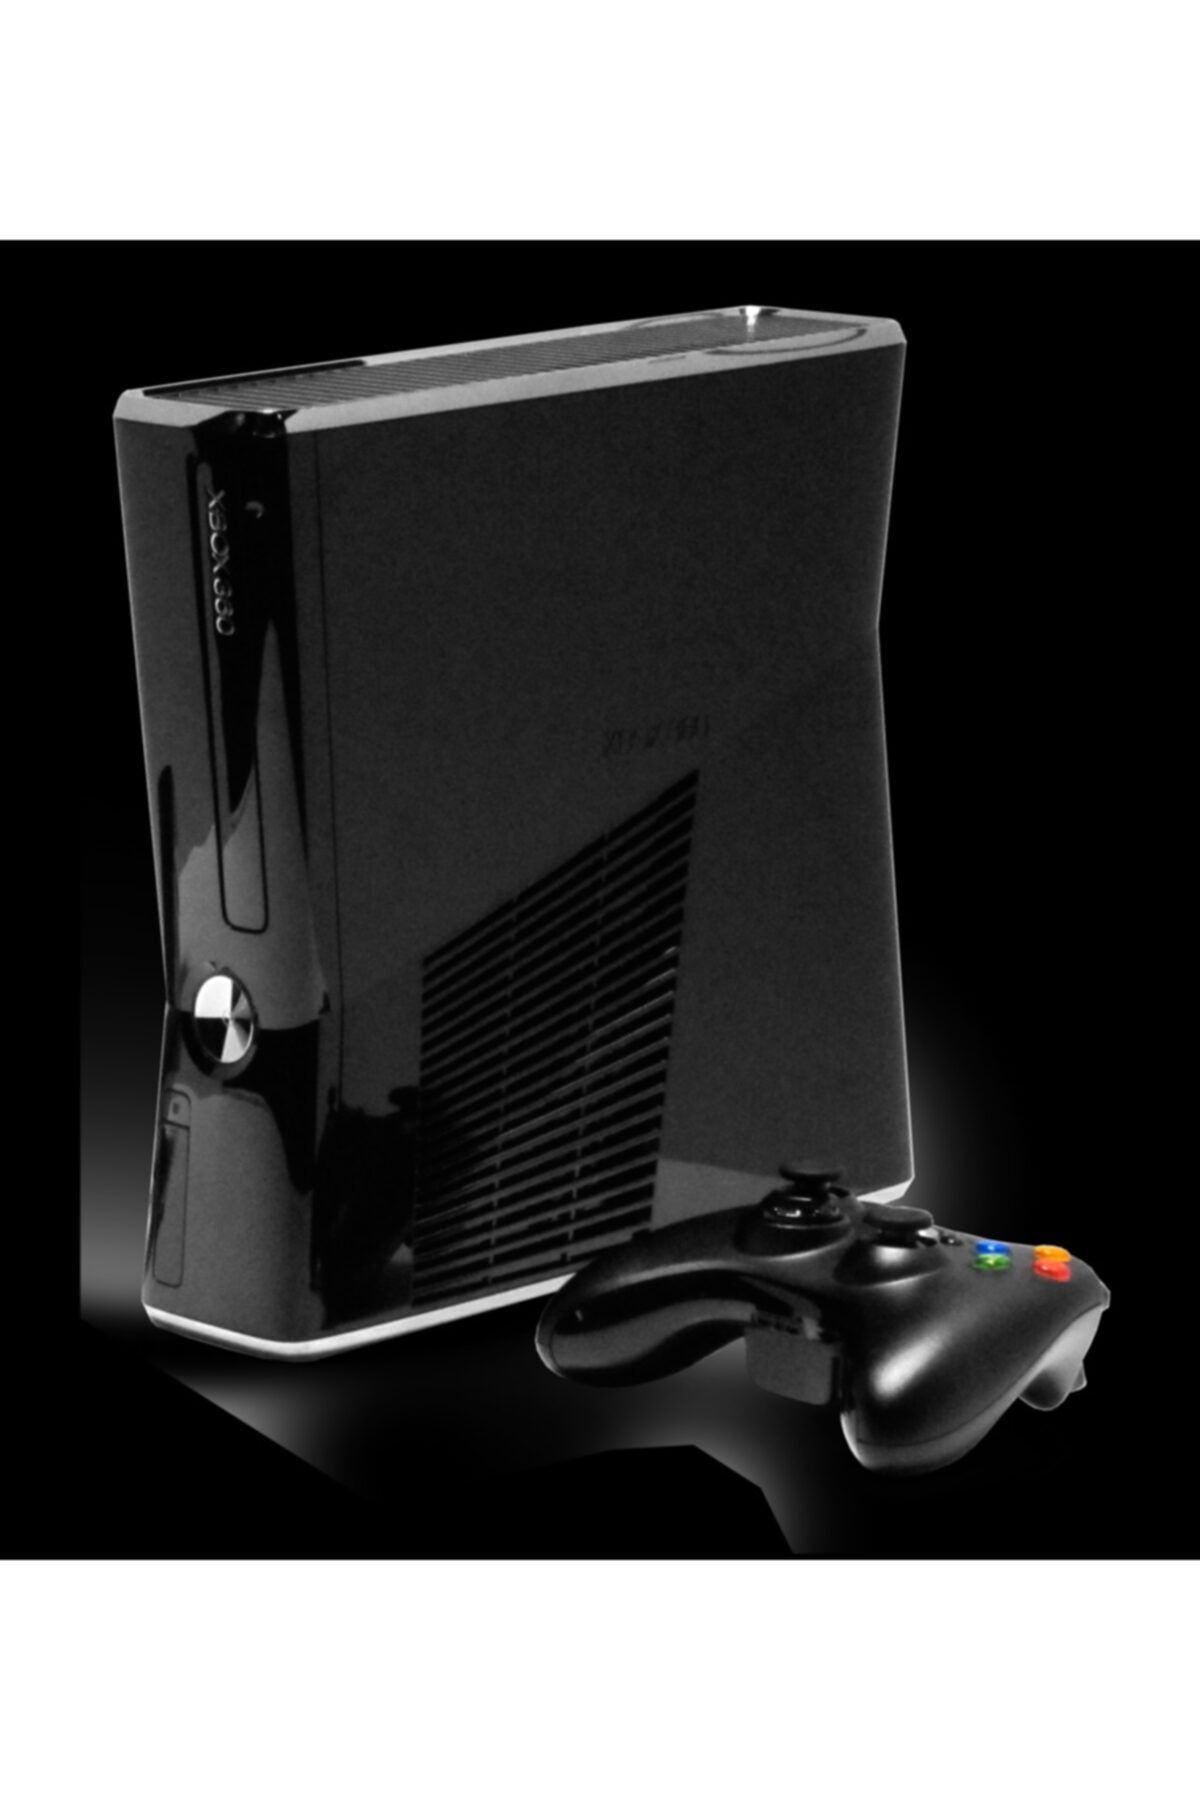 Microsoft Xbox 360 Makina 250 Gb Konsol Jtaglı 30 Adet Oyun Yüklü